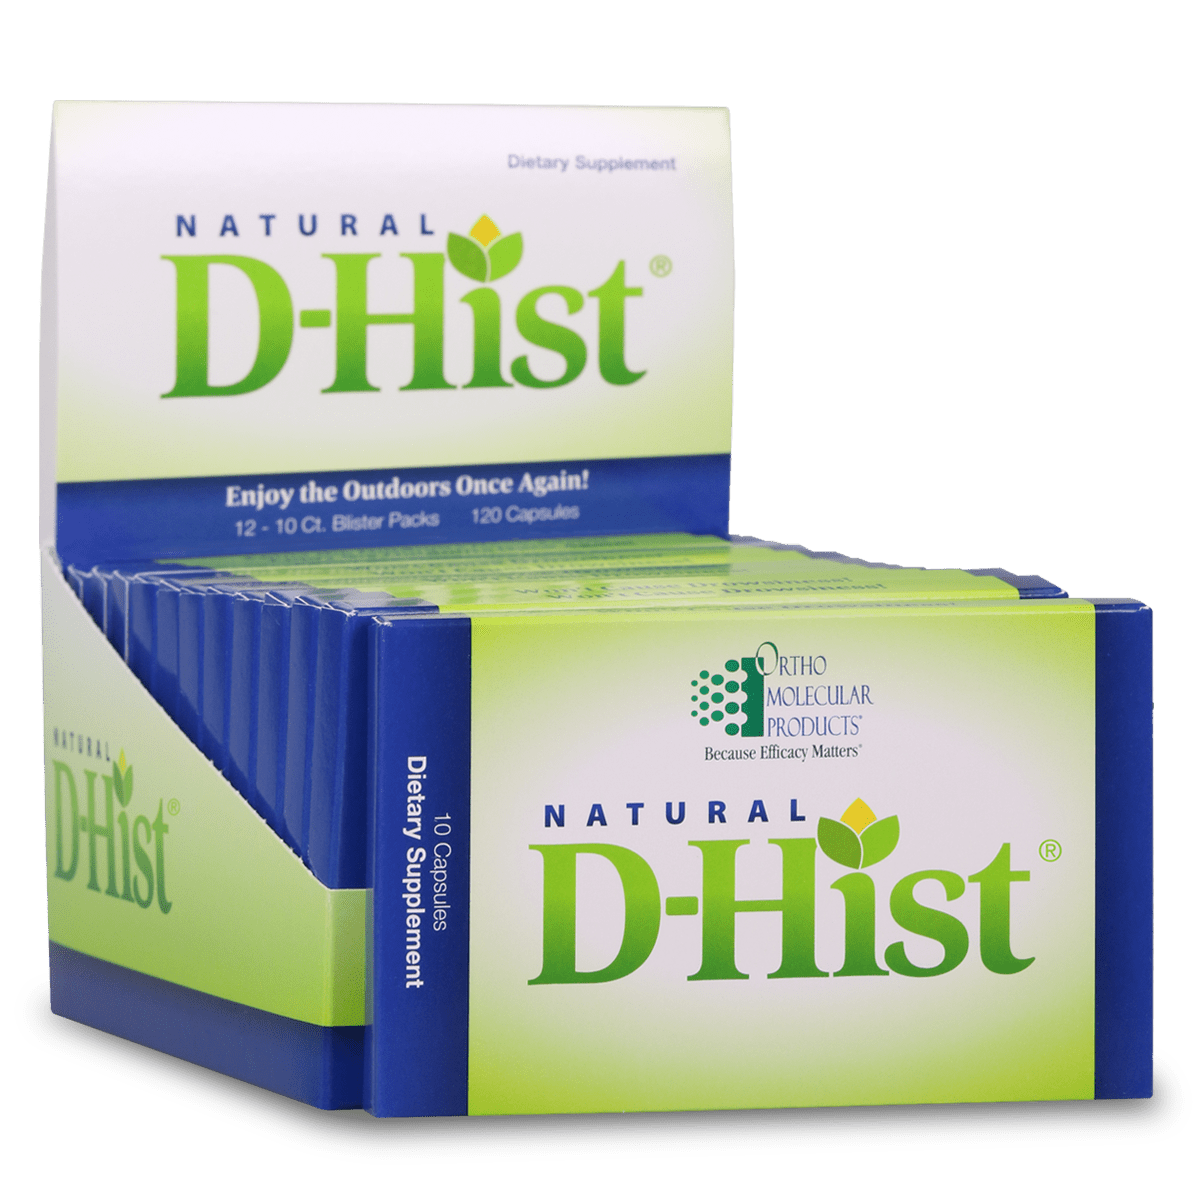 Natural D-Hist Blister Packs